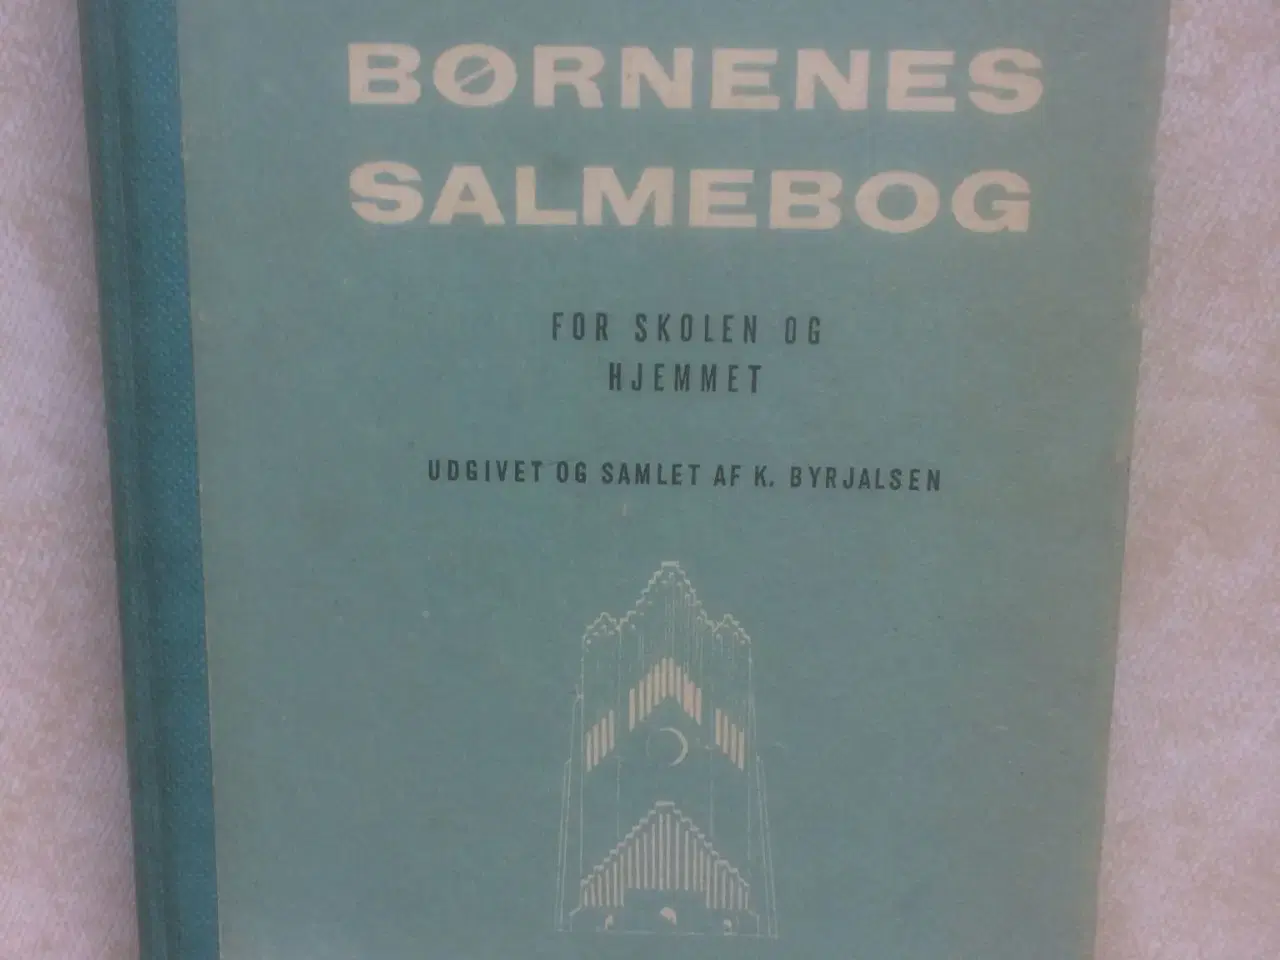 Billede 1 - Ældre salmebog fra 1968